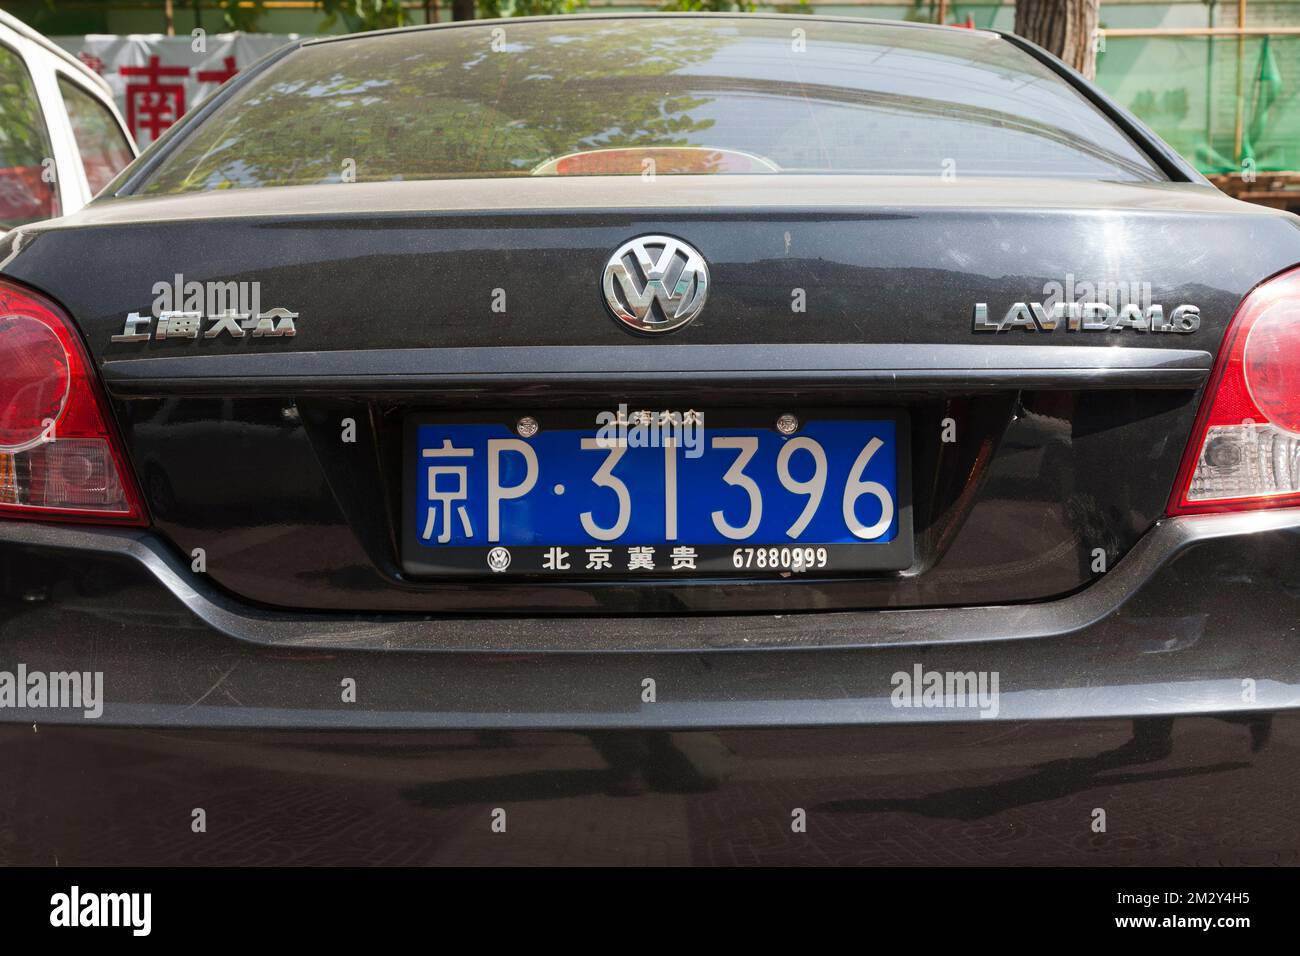 Posteriore con targa e modello scritto in caratteri cinesi / scritta VW Volkswagen auto / veicolo in Cina. Xian, Cina. (125) Foto Stock